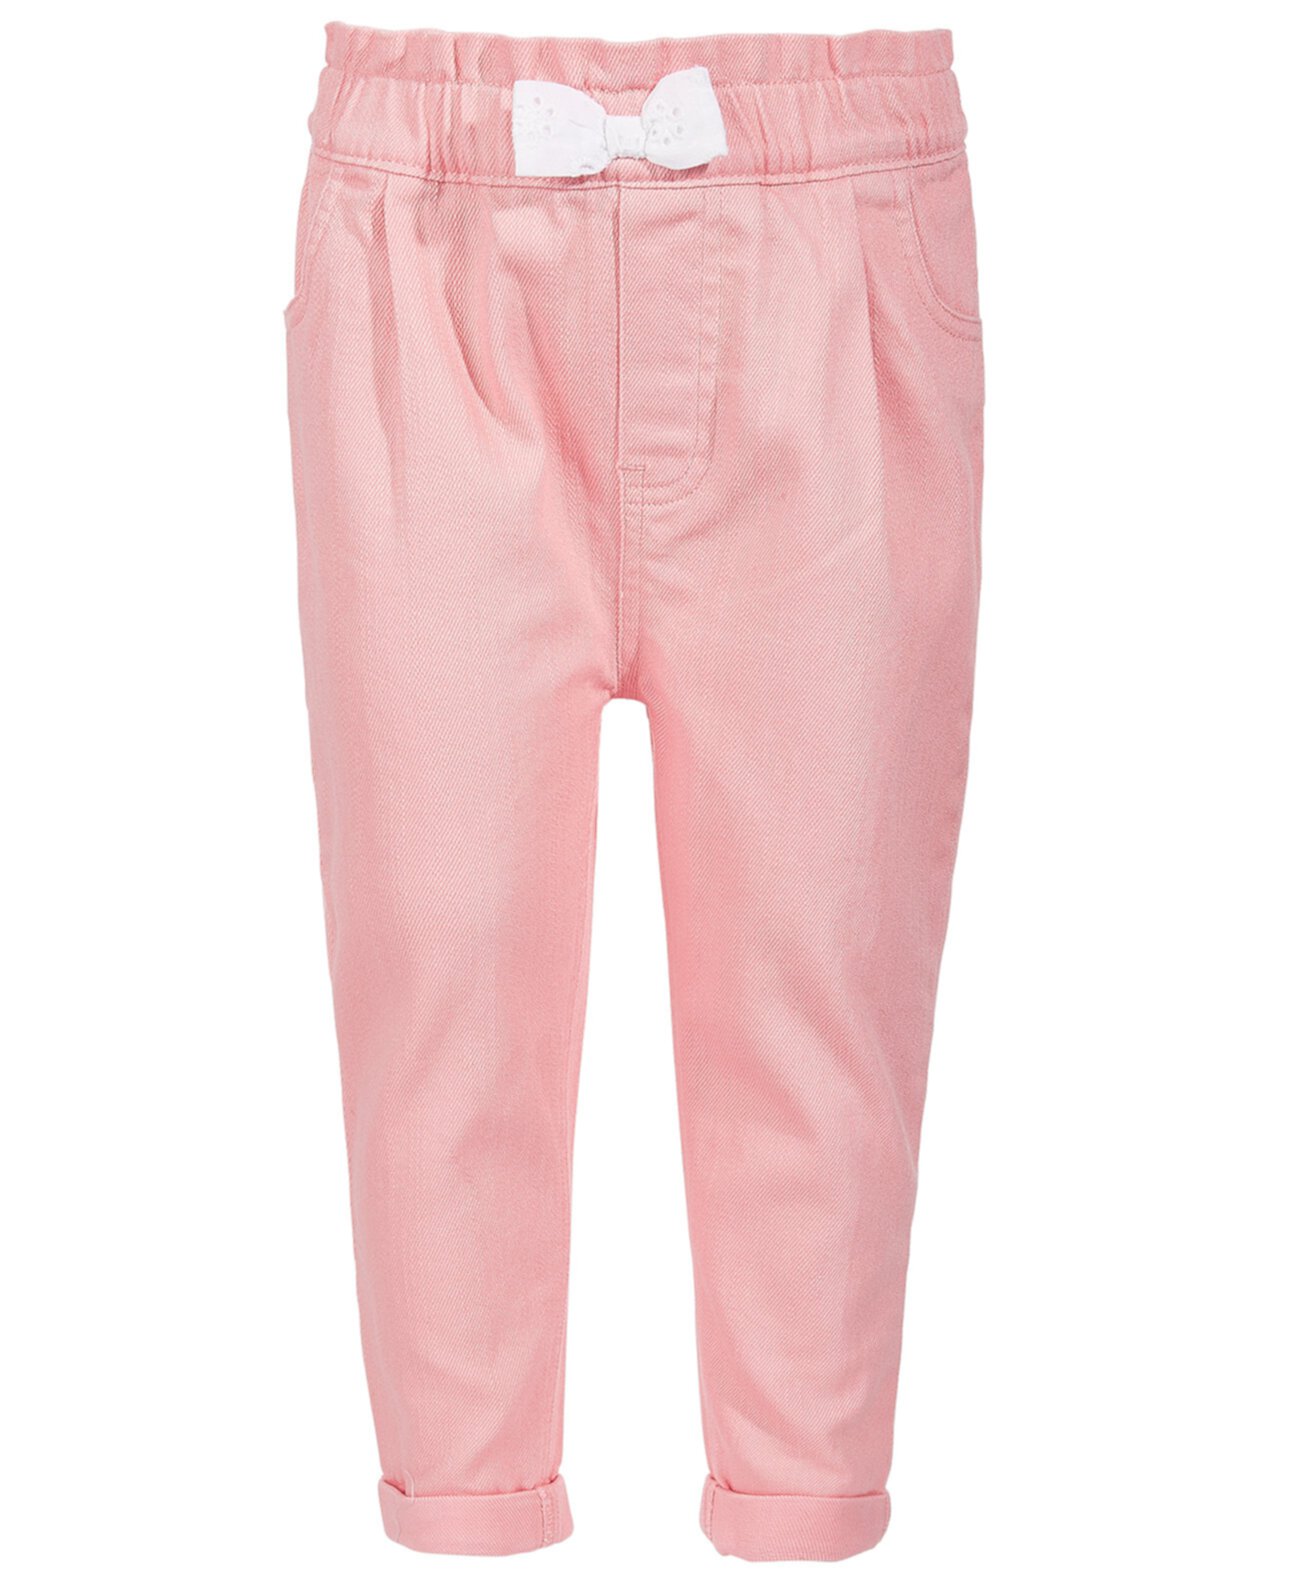 Розовые джинсовые джинсы с бантом для маленьких девочек, созданные для Macy's First Impressions